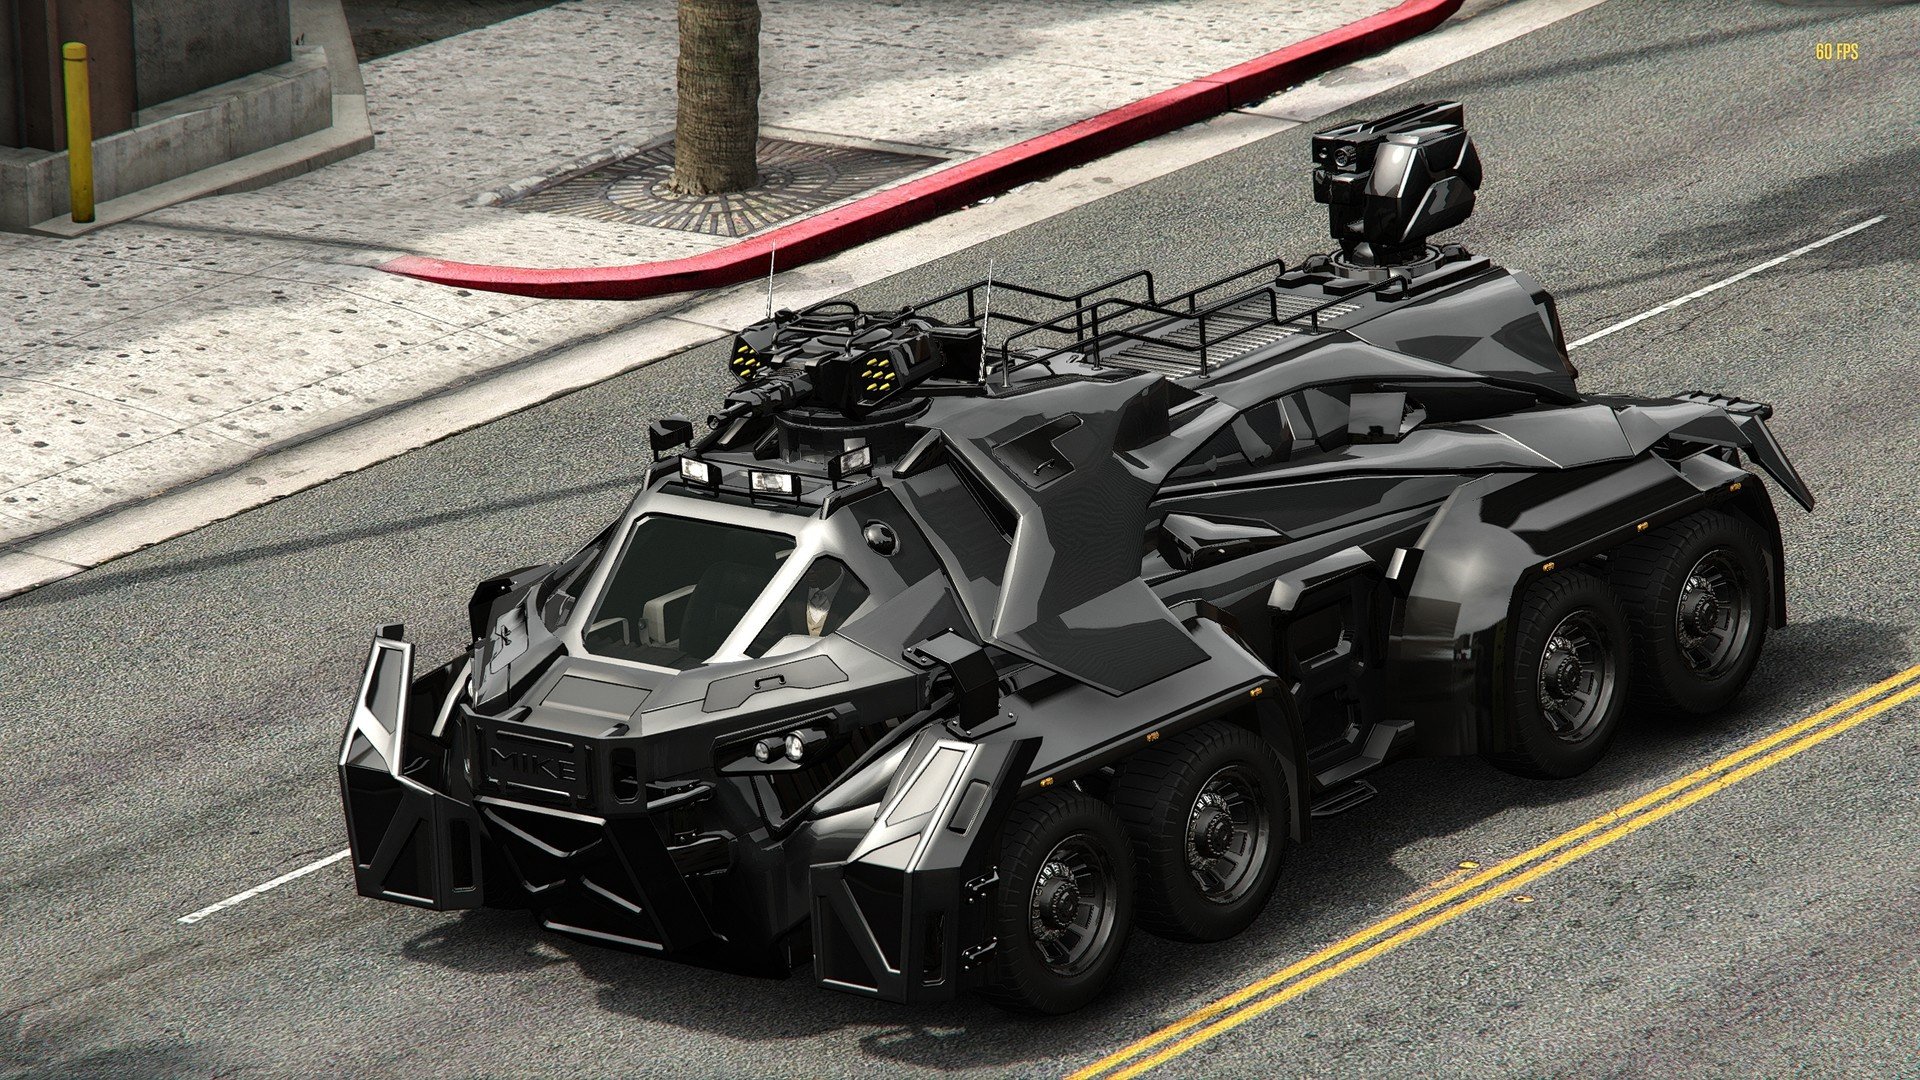 AMG transport Dynamics m12s Warthog. Бронемашина будущего концепт. Футуристичный бронеавтомобиль. Броневик Терминатор в ГТА 5 мод.